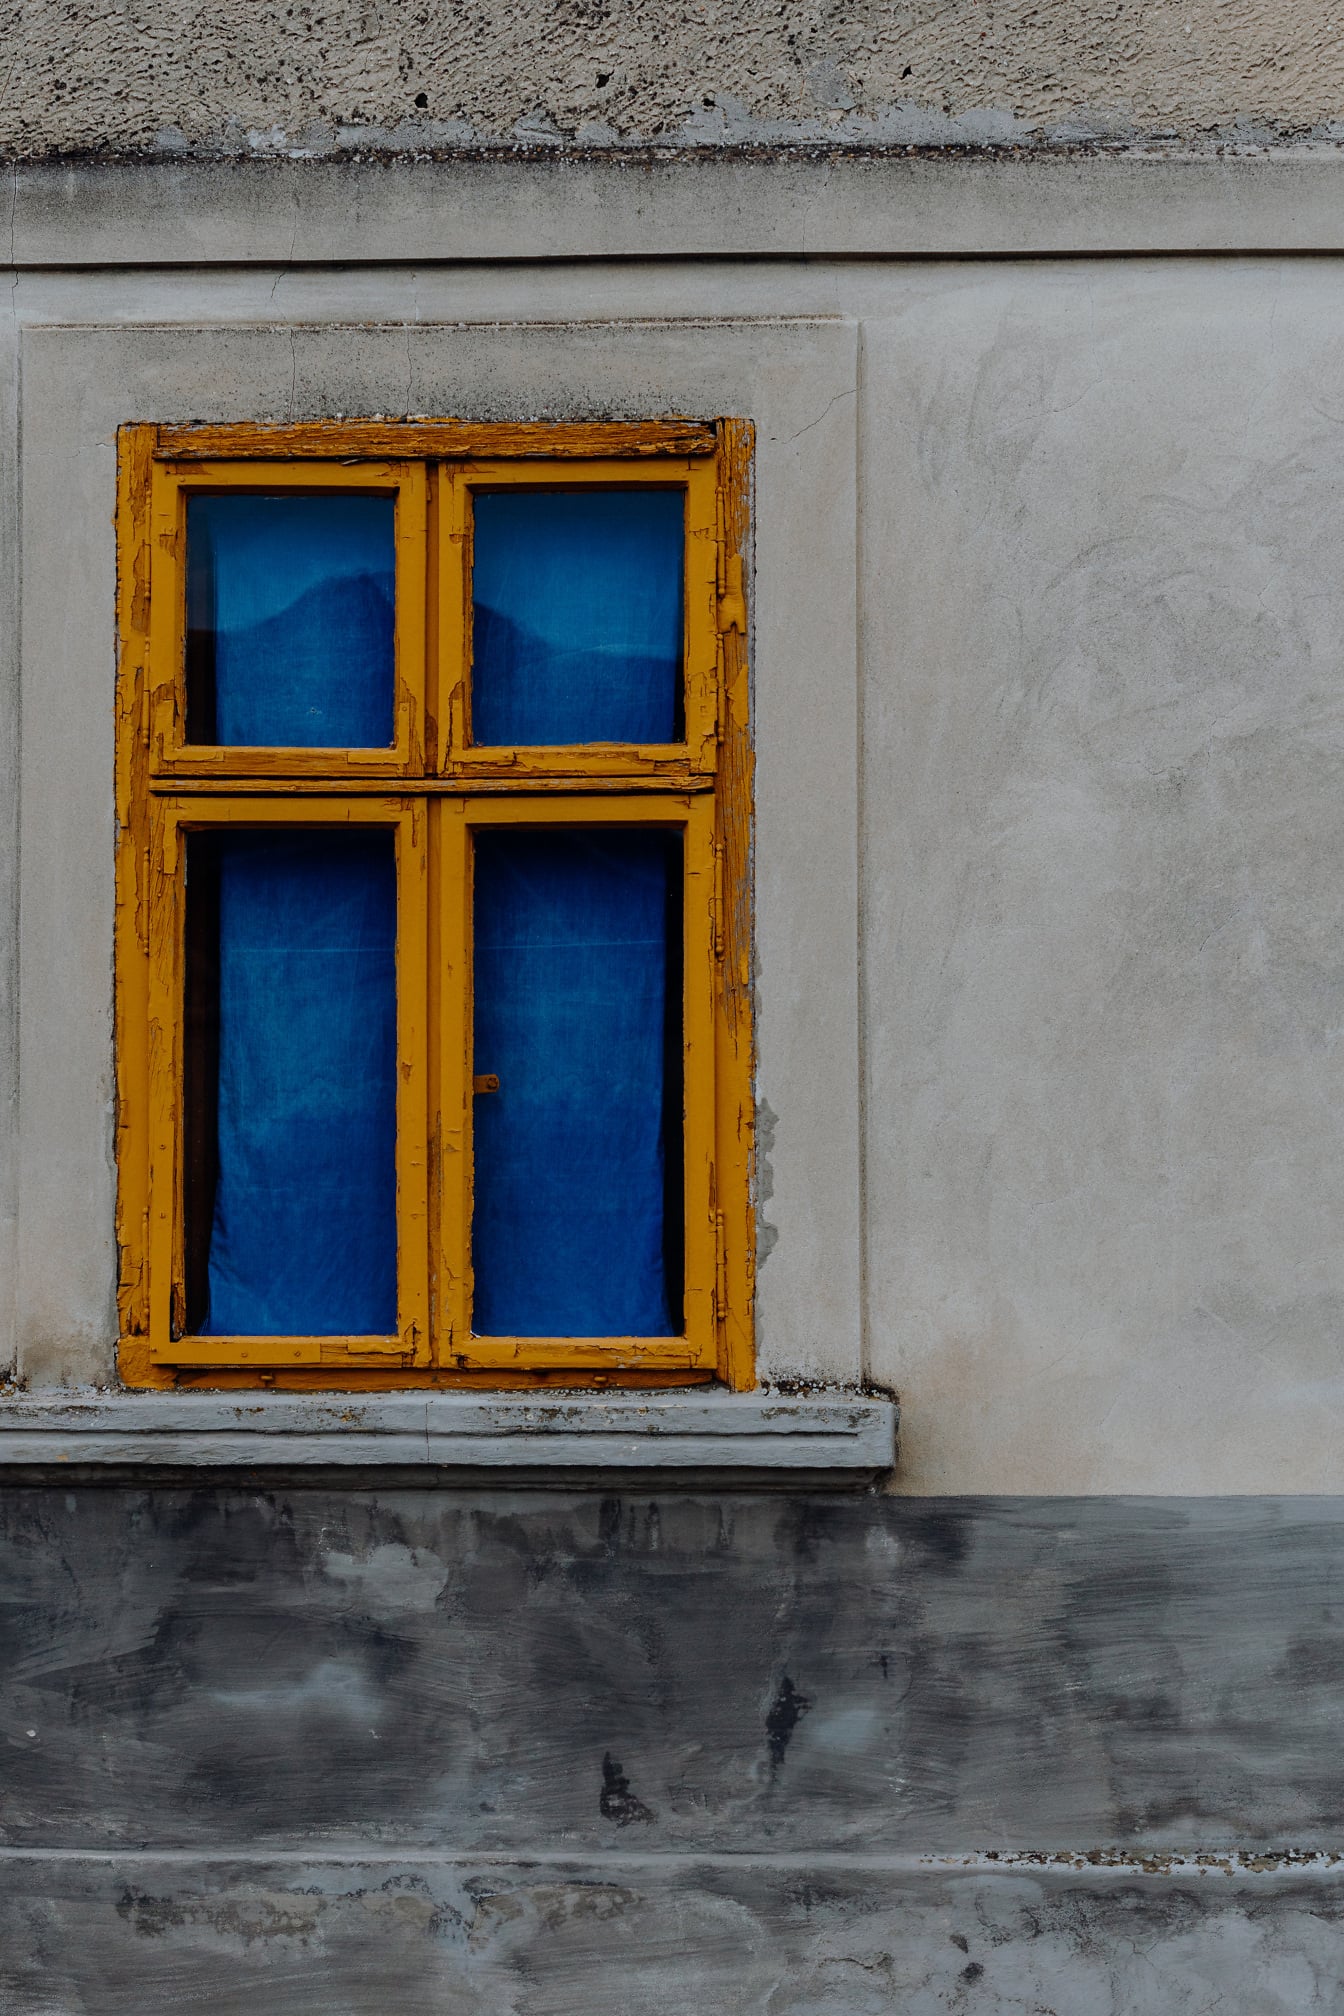 Żywa żółtawo-brązowa farba na starym oknie z ciemnoniebieską zasłoną